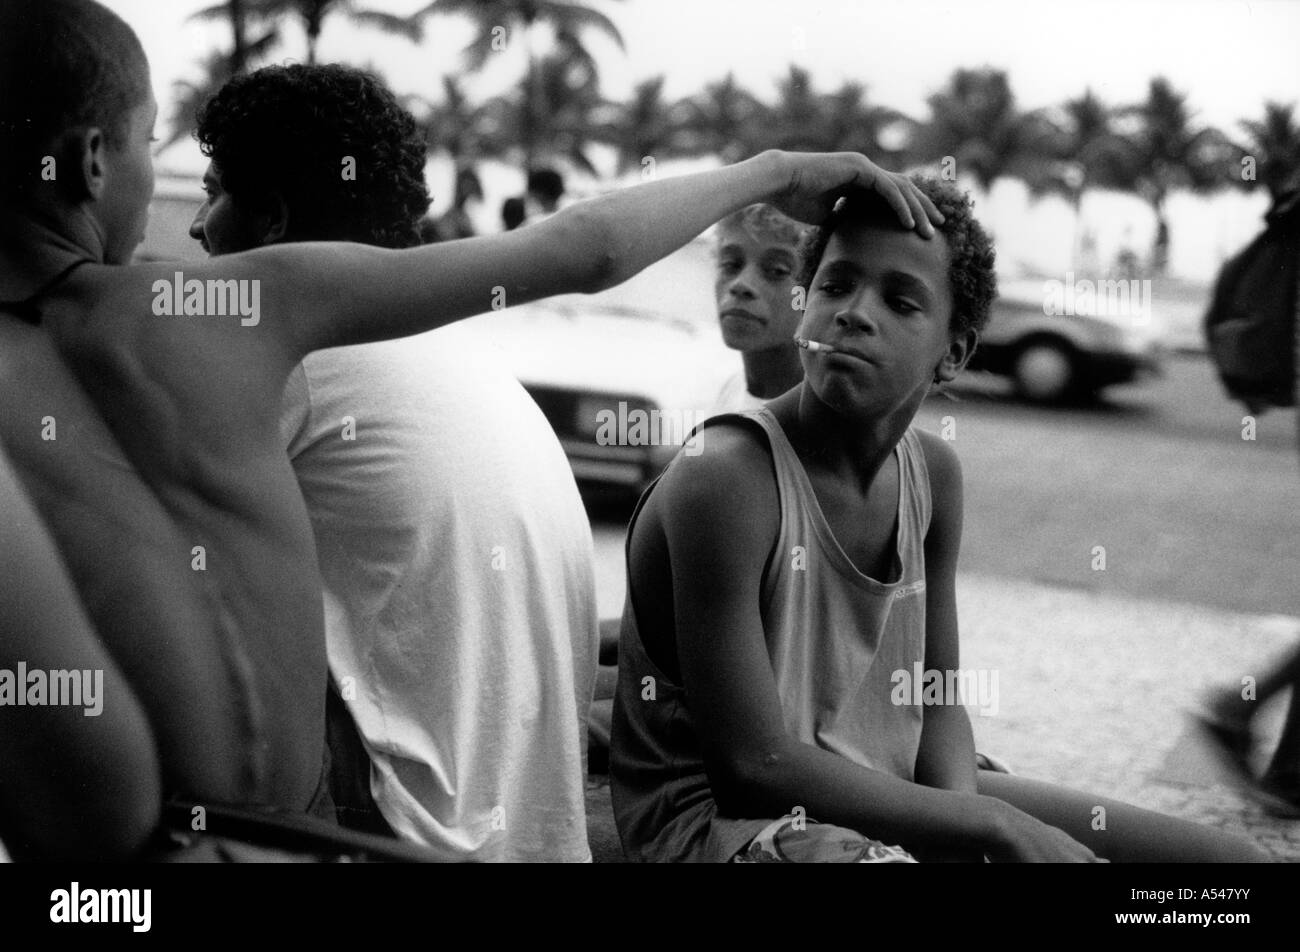 Painet hn1697 221 in bianco e nero di bambini di strada copacabana Rio Janeiro brasile paese nazione in via di sviluppo meno economicamente Foto Stock